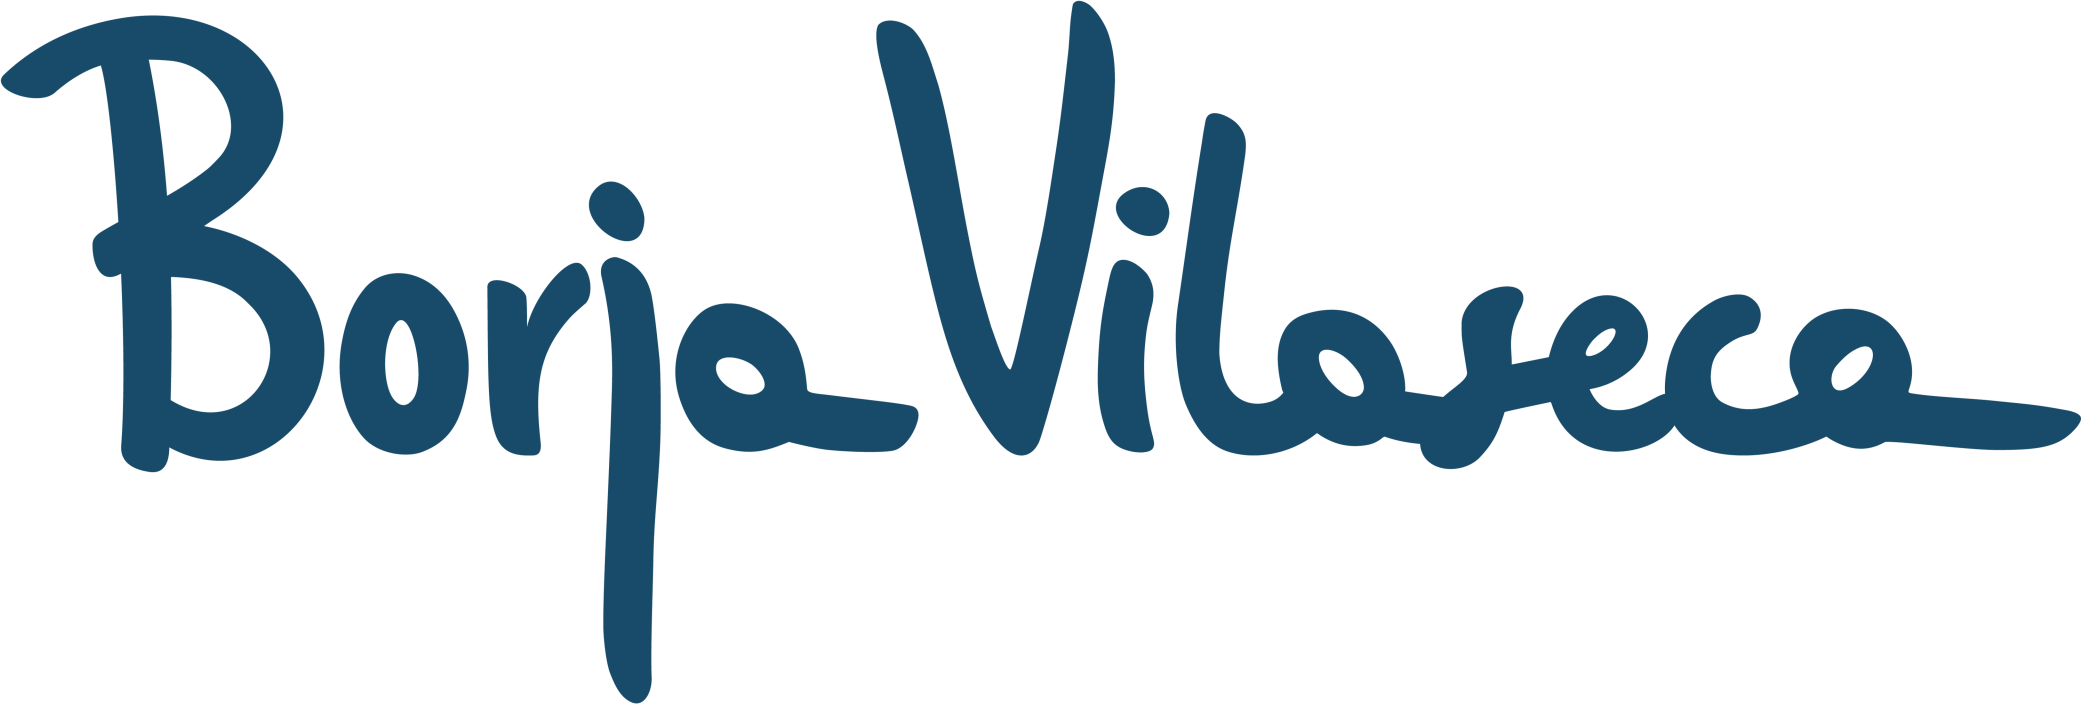 Borja Vilaseca Logo